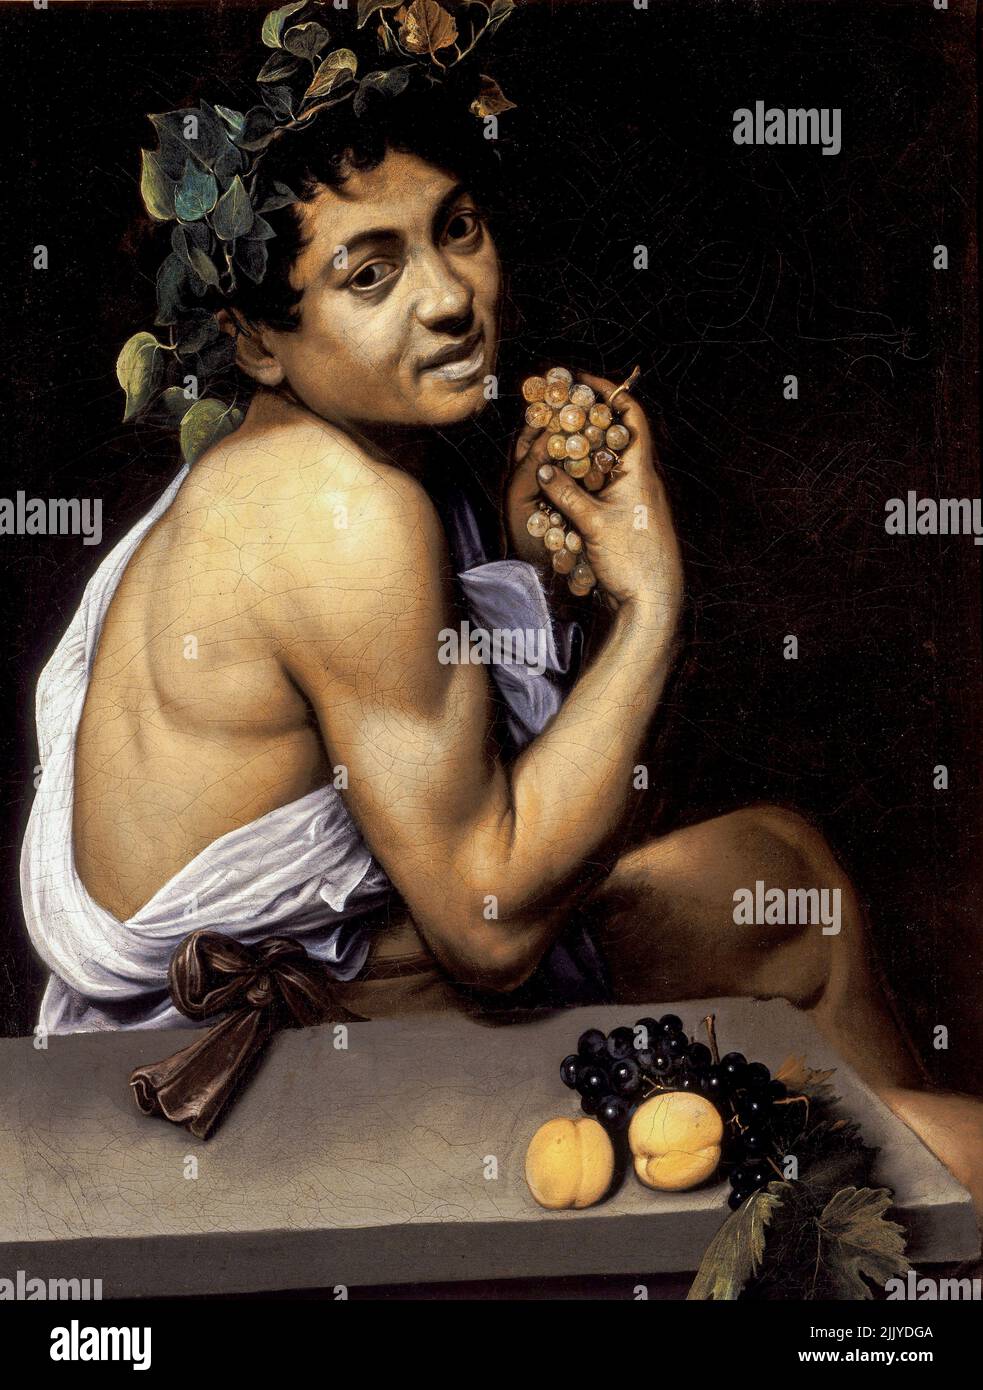 Michelangelo Merisi da Cravaggio, Caravaggio; Bacchino Malato, Young Sick Bacchus; 1593; oil on canvas. Galleria Borghese, Rome, Italy Stock Photo